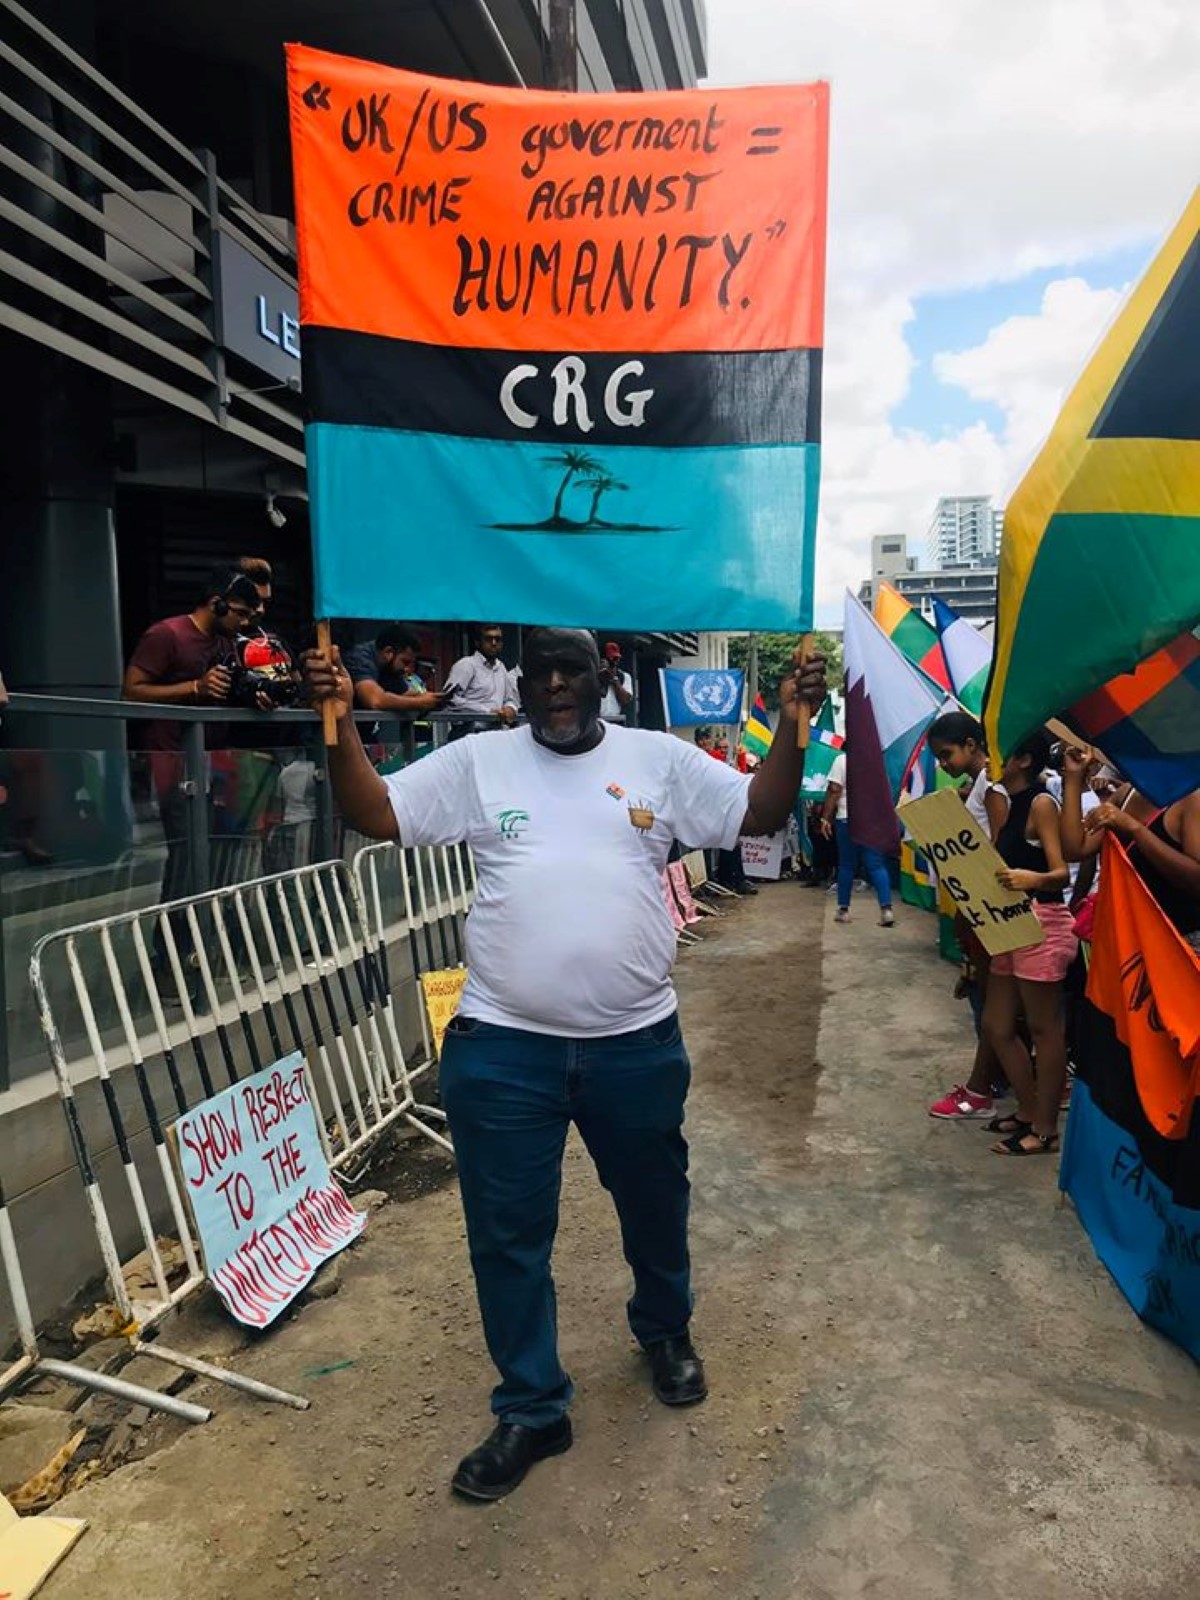 Le Groupe Réfugiés Chagos évoque des actions légales contre le GM britannique